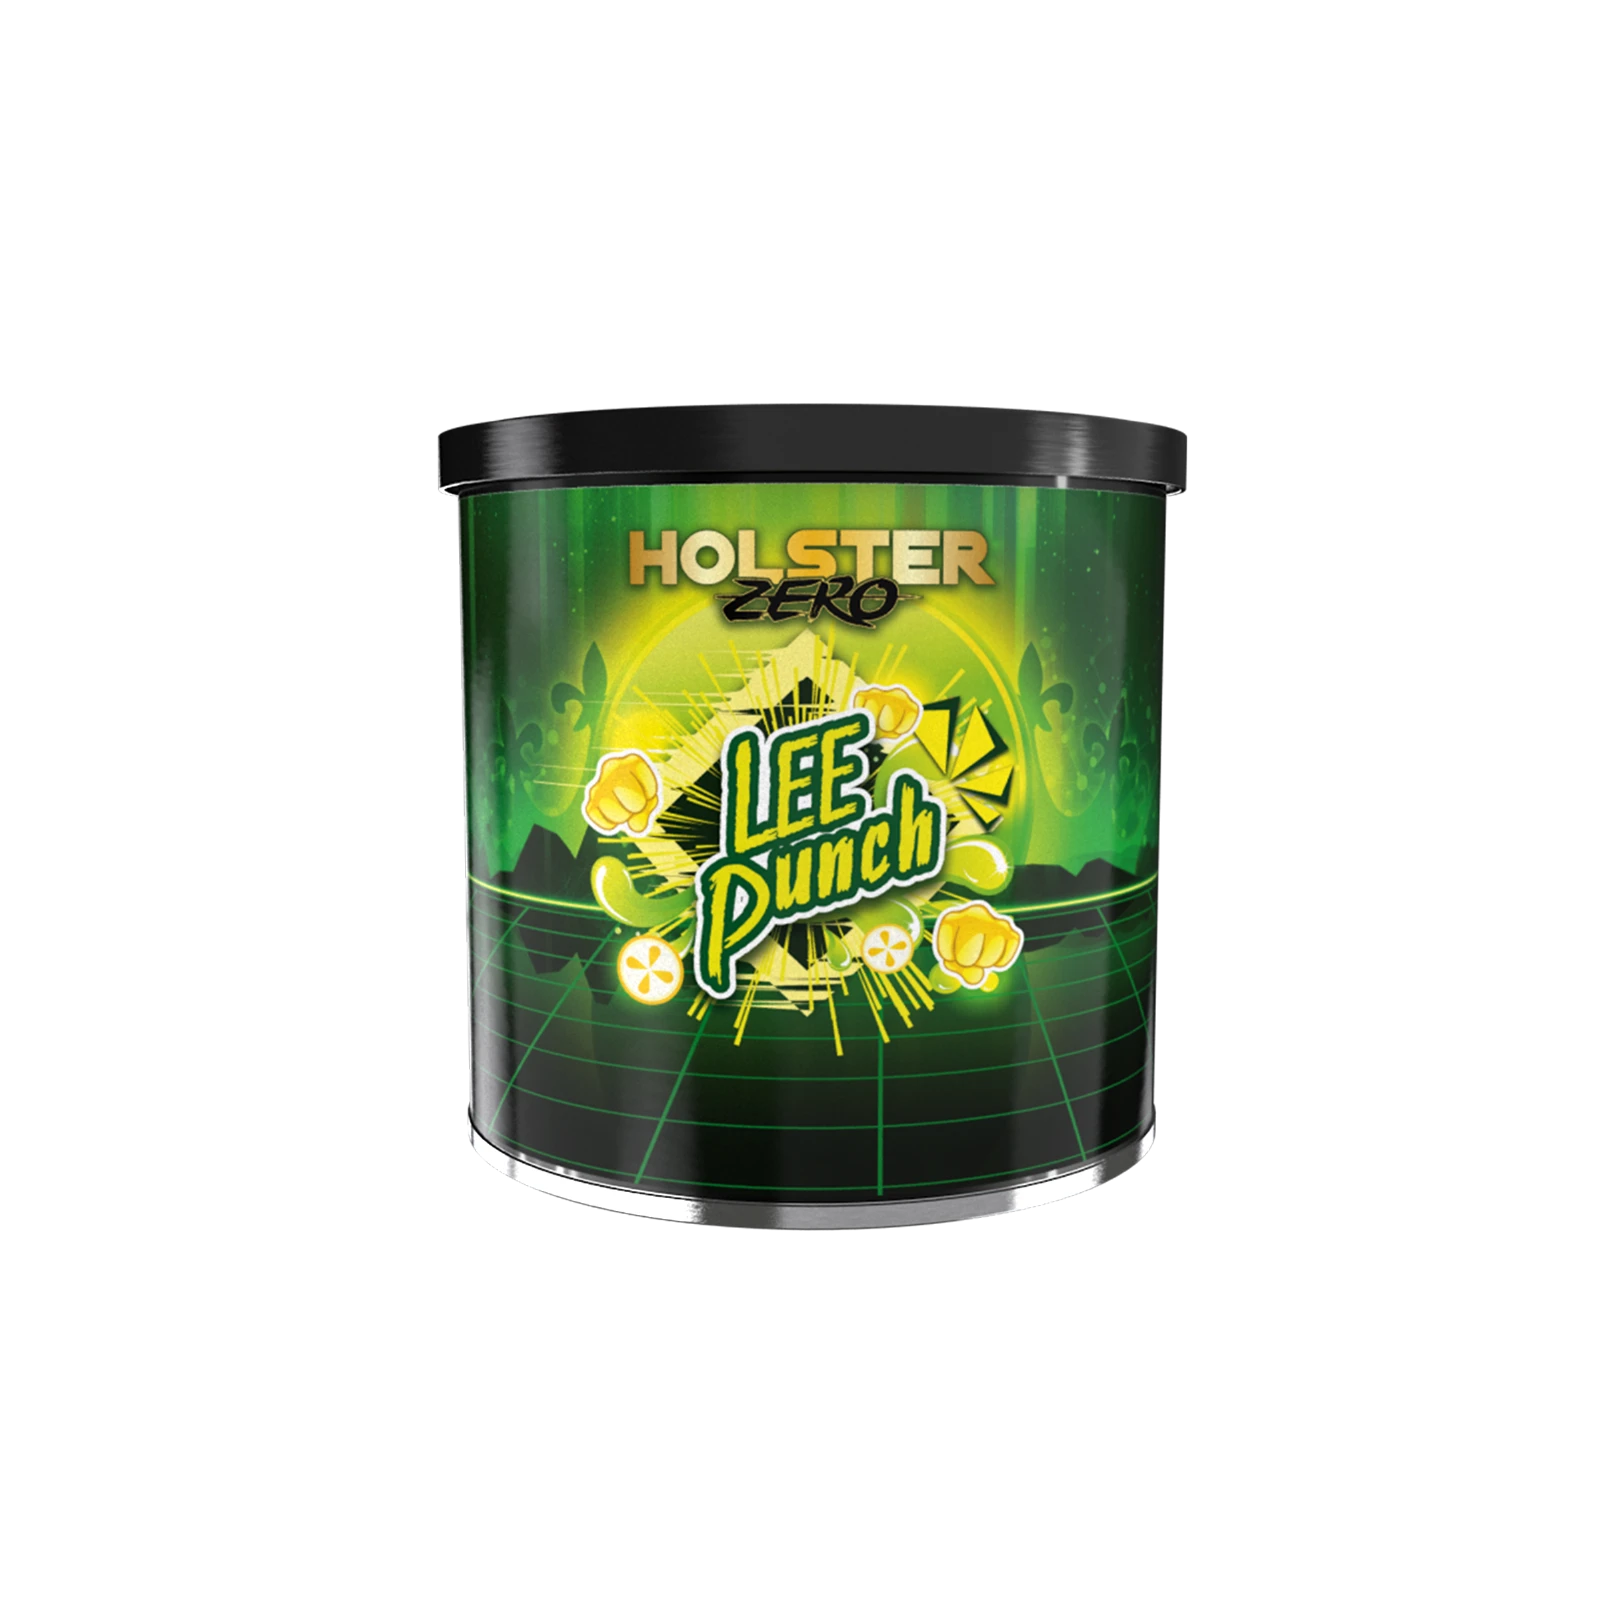 Holster ZERO Dry Base Lee Punch 75g | Pfeifentabak günstig kaufen1